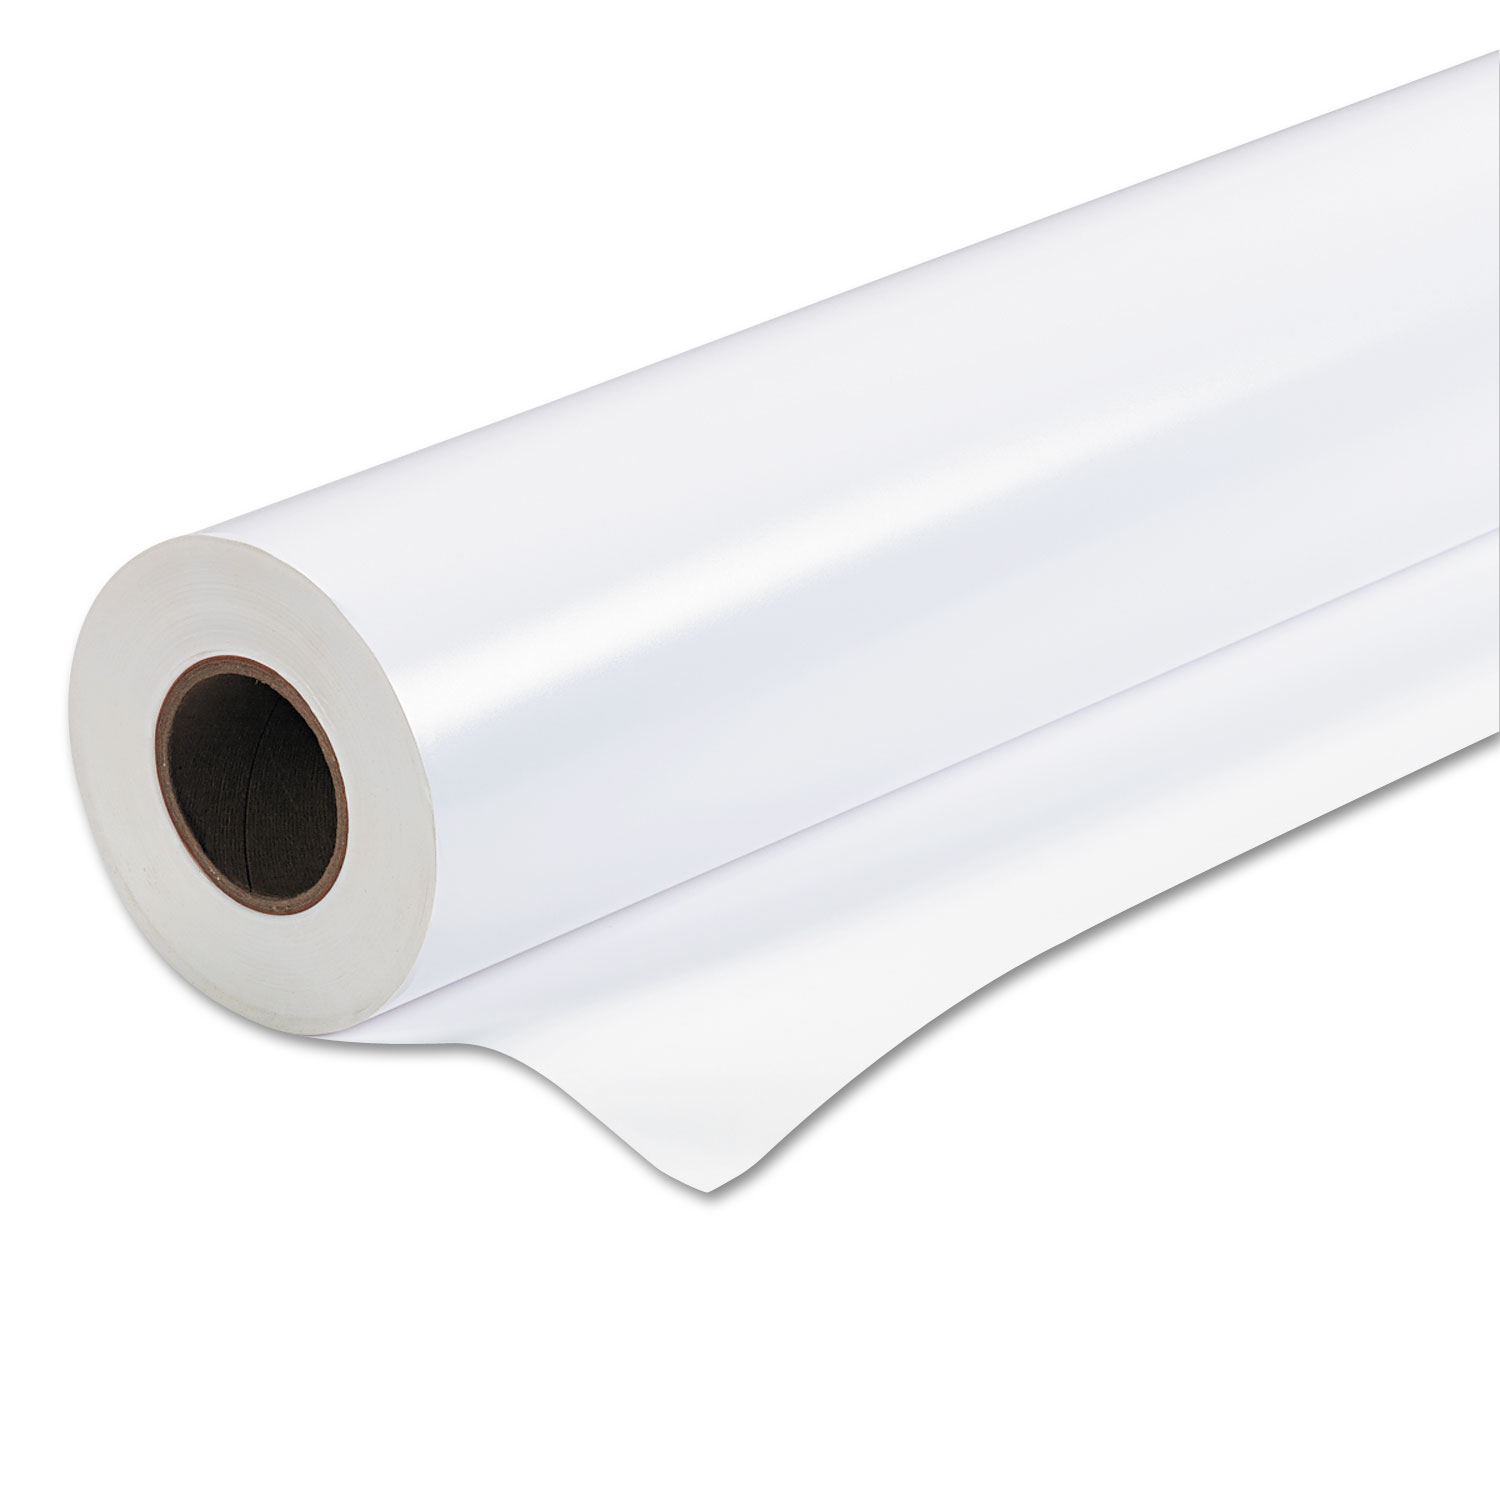  Epson S041394 Premium Semigloss Photo Paper Roll, 7 mil, 36 x 100 ft, Semi-Gloss White (EPSS041394) 